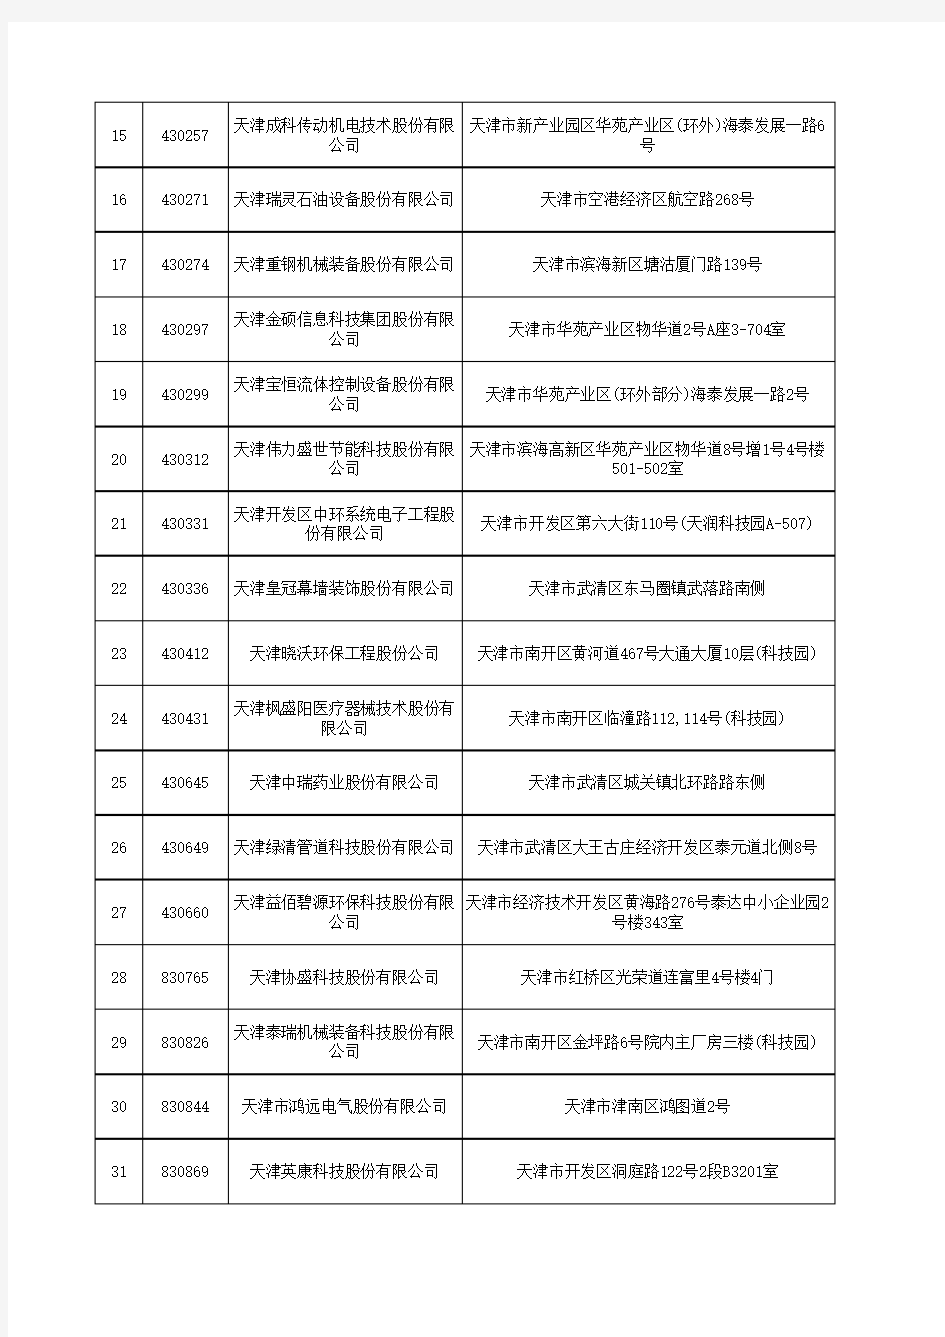 天津辖区新三板挂牌公司名录(截至2017年9月30日)